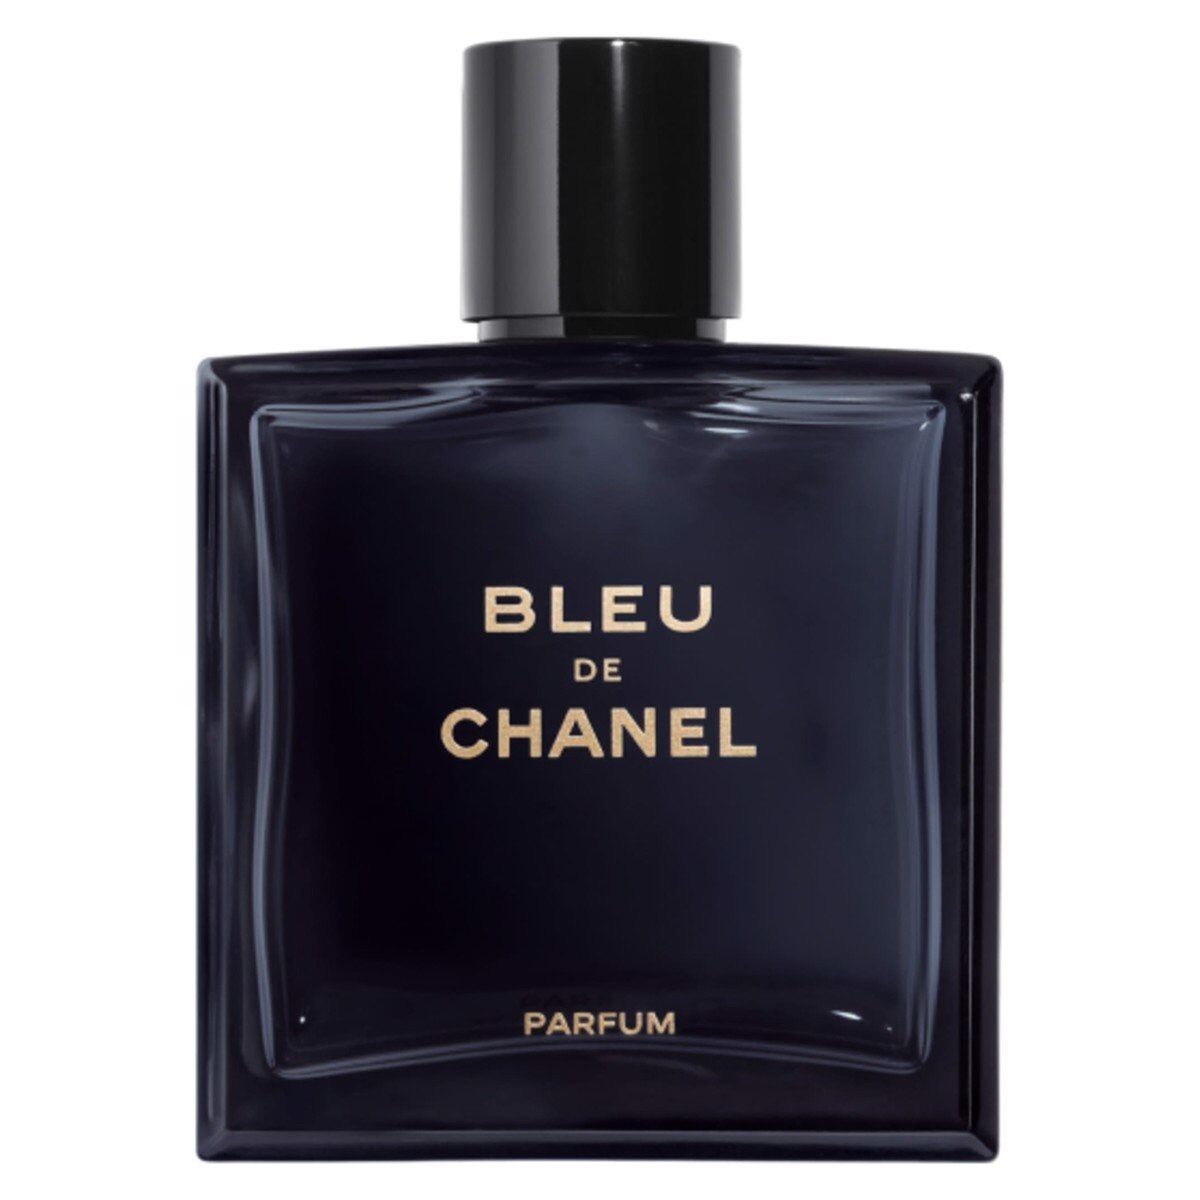 Bleu de chanel parfum fullbox100ml